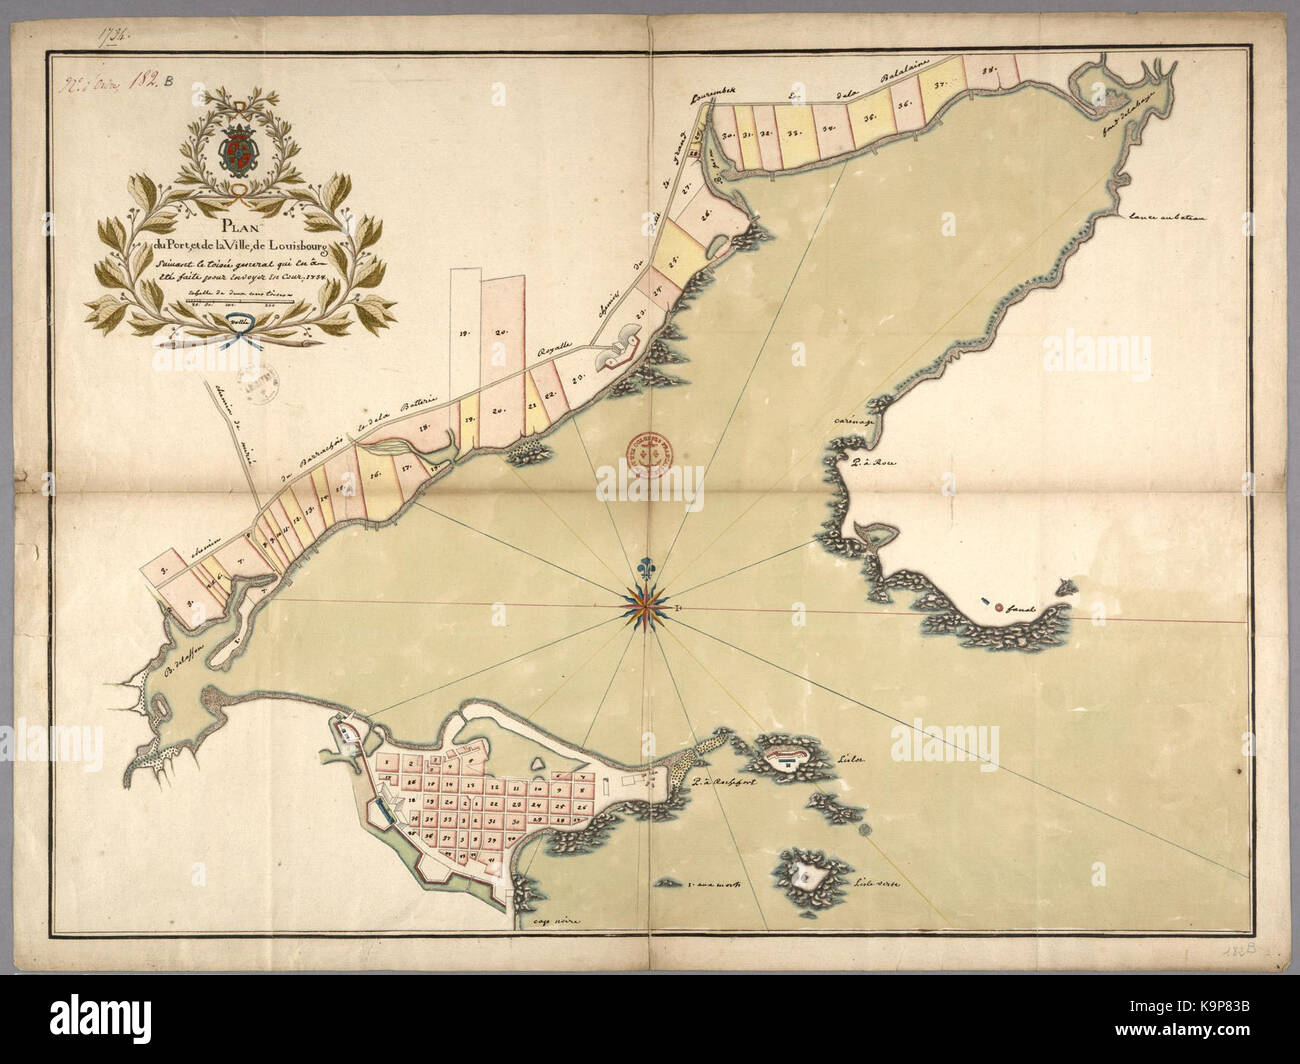 Plan du Port et de la Ville de Louisbourg suivant le toise general qui en a ete fait pour envoyer en Cour Stock Photo